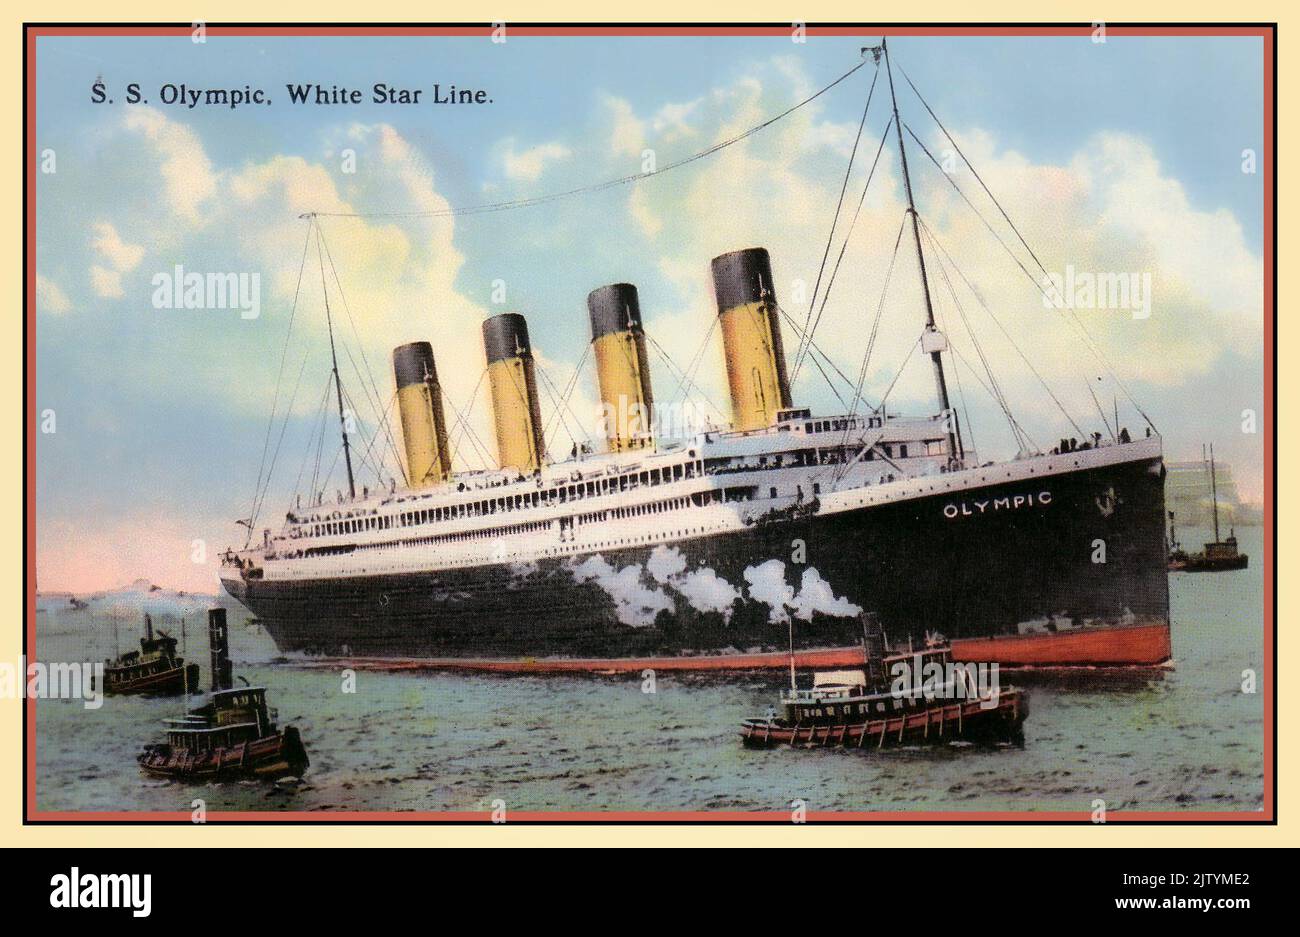 RMS Olympic 1900s (navire jumeau de RMS Titanic) assisté par des remorqueurs pilotes dans le port de New York, un paquebot identique à RMS Titanic naviguant sous le drapeau de la ligne White Star. New York Harbour America États-Unis Banque D'Images